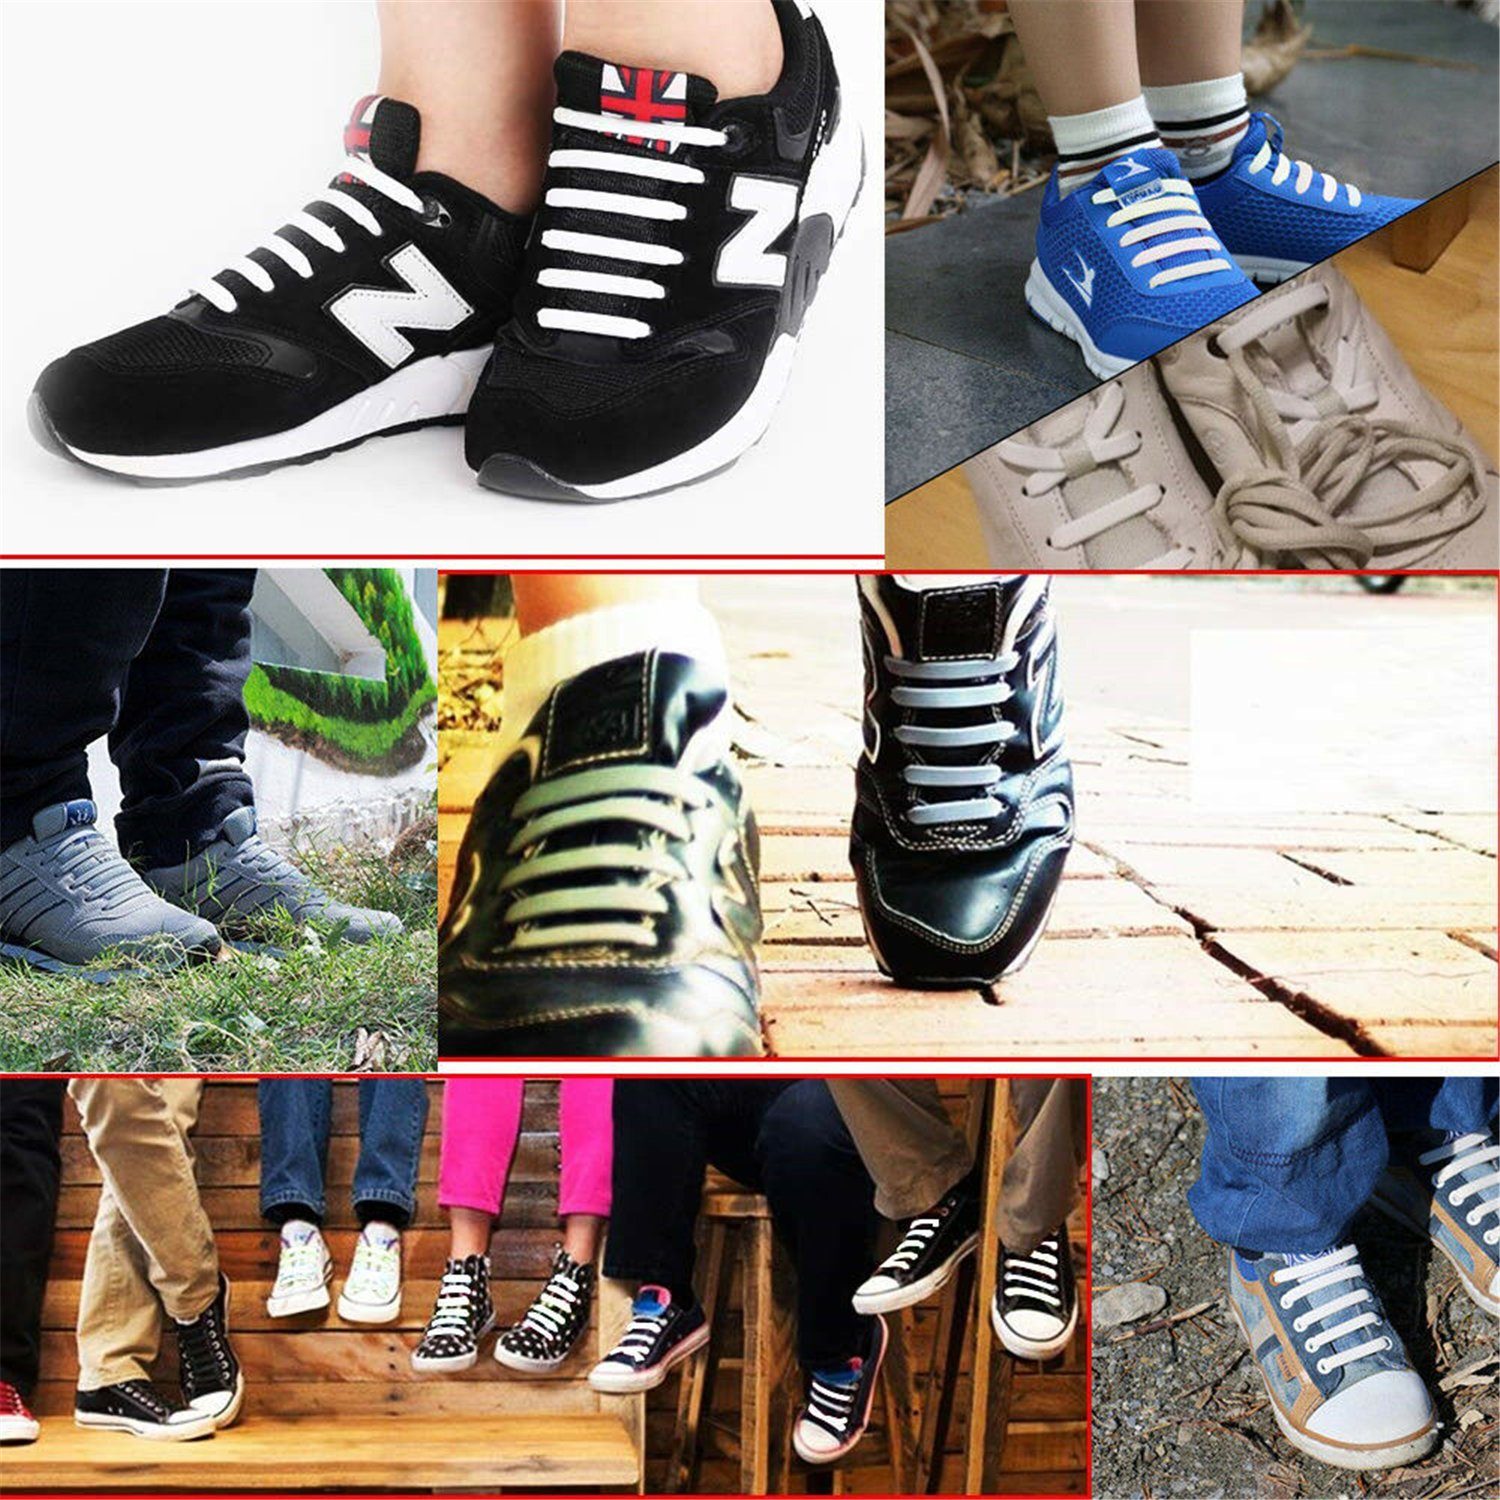 Olotos Schnürsenkel ohne Binden elastische Bunt Schleifenlose, Wasserdichte Kinder Gummi Elastische Schuhbänder für Silikon und Schnürsenkel Erwachsene Flache